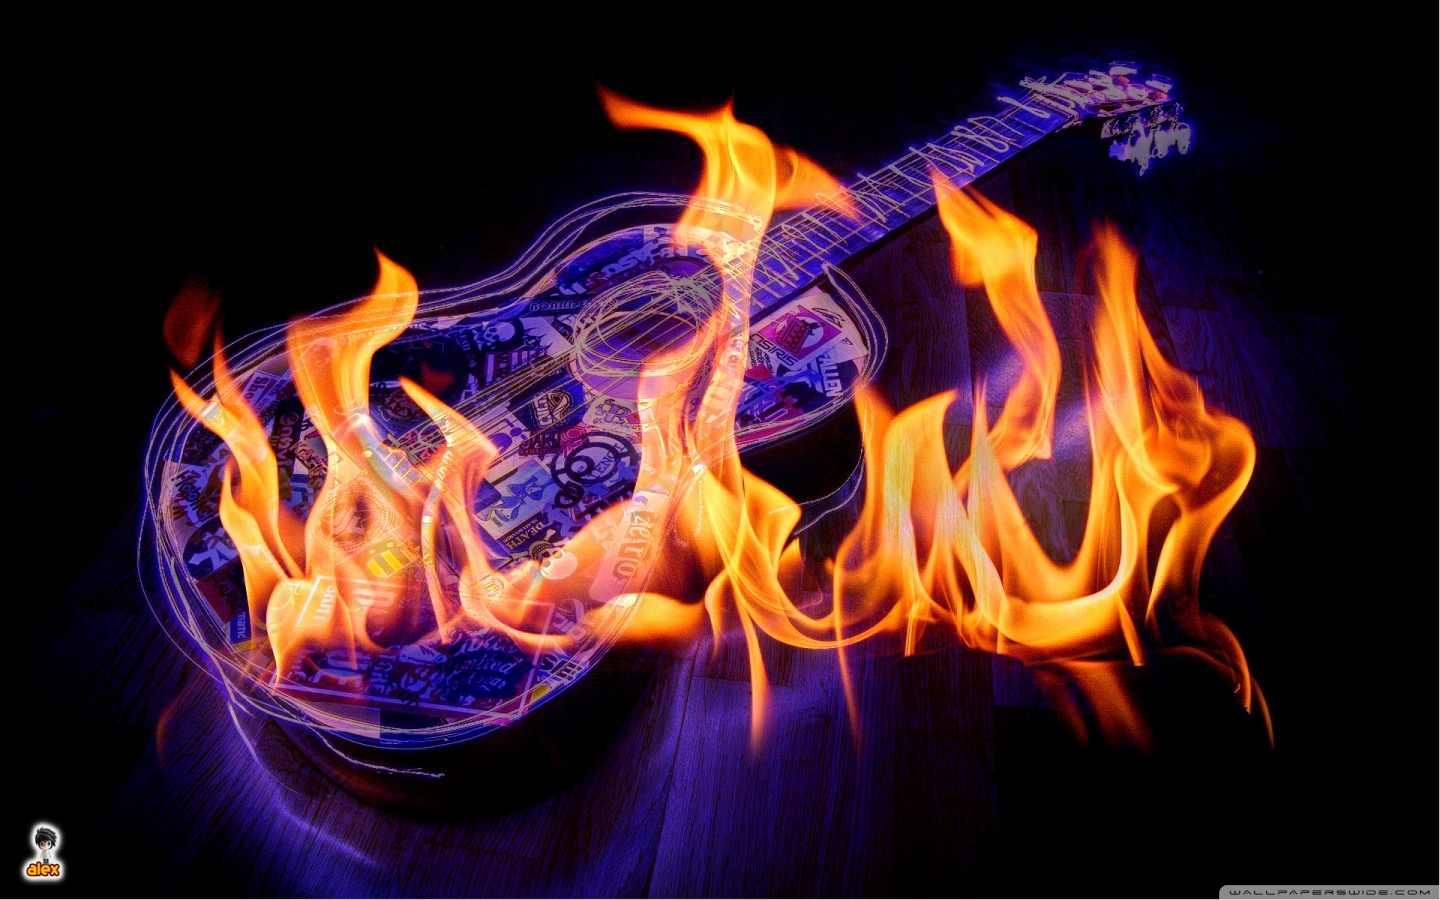 guitar on fire HD desktop wallpaper : Widescreen